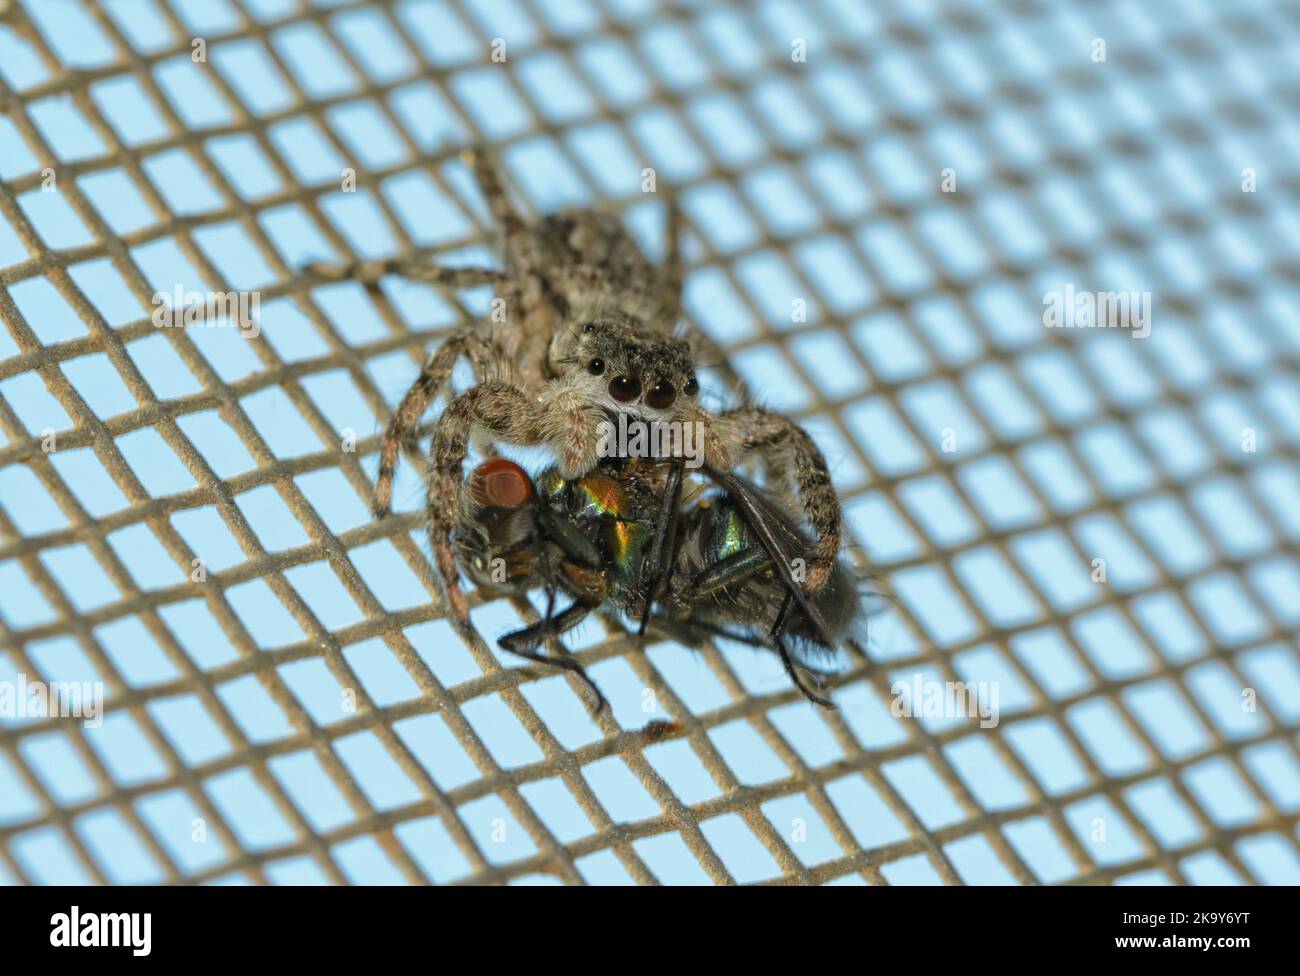 Araña Tan hembra que salta sosteniendo una mosca en sus pedipalps mientras cuelga sobre una pantalla de la ventana Foto de stock